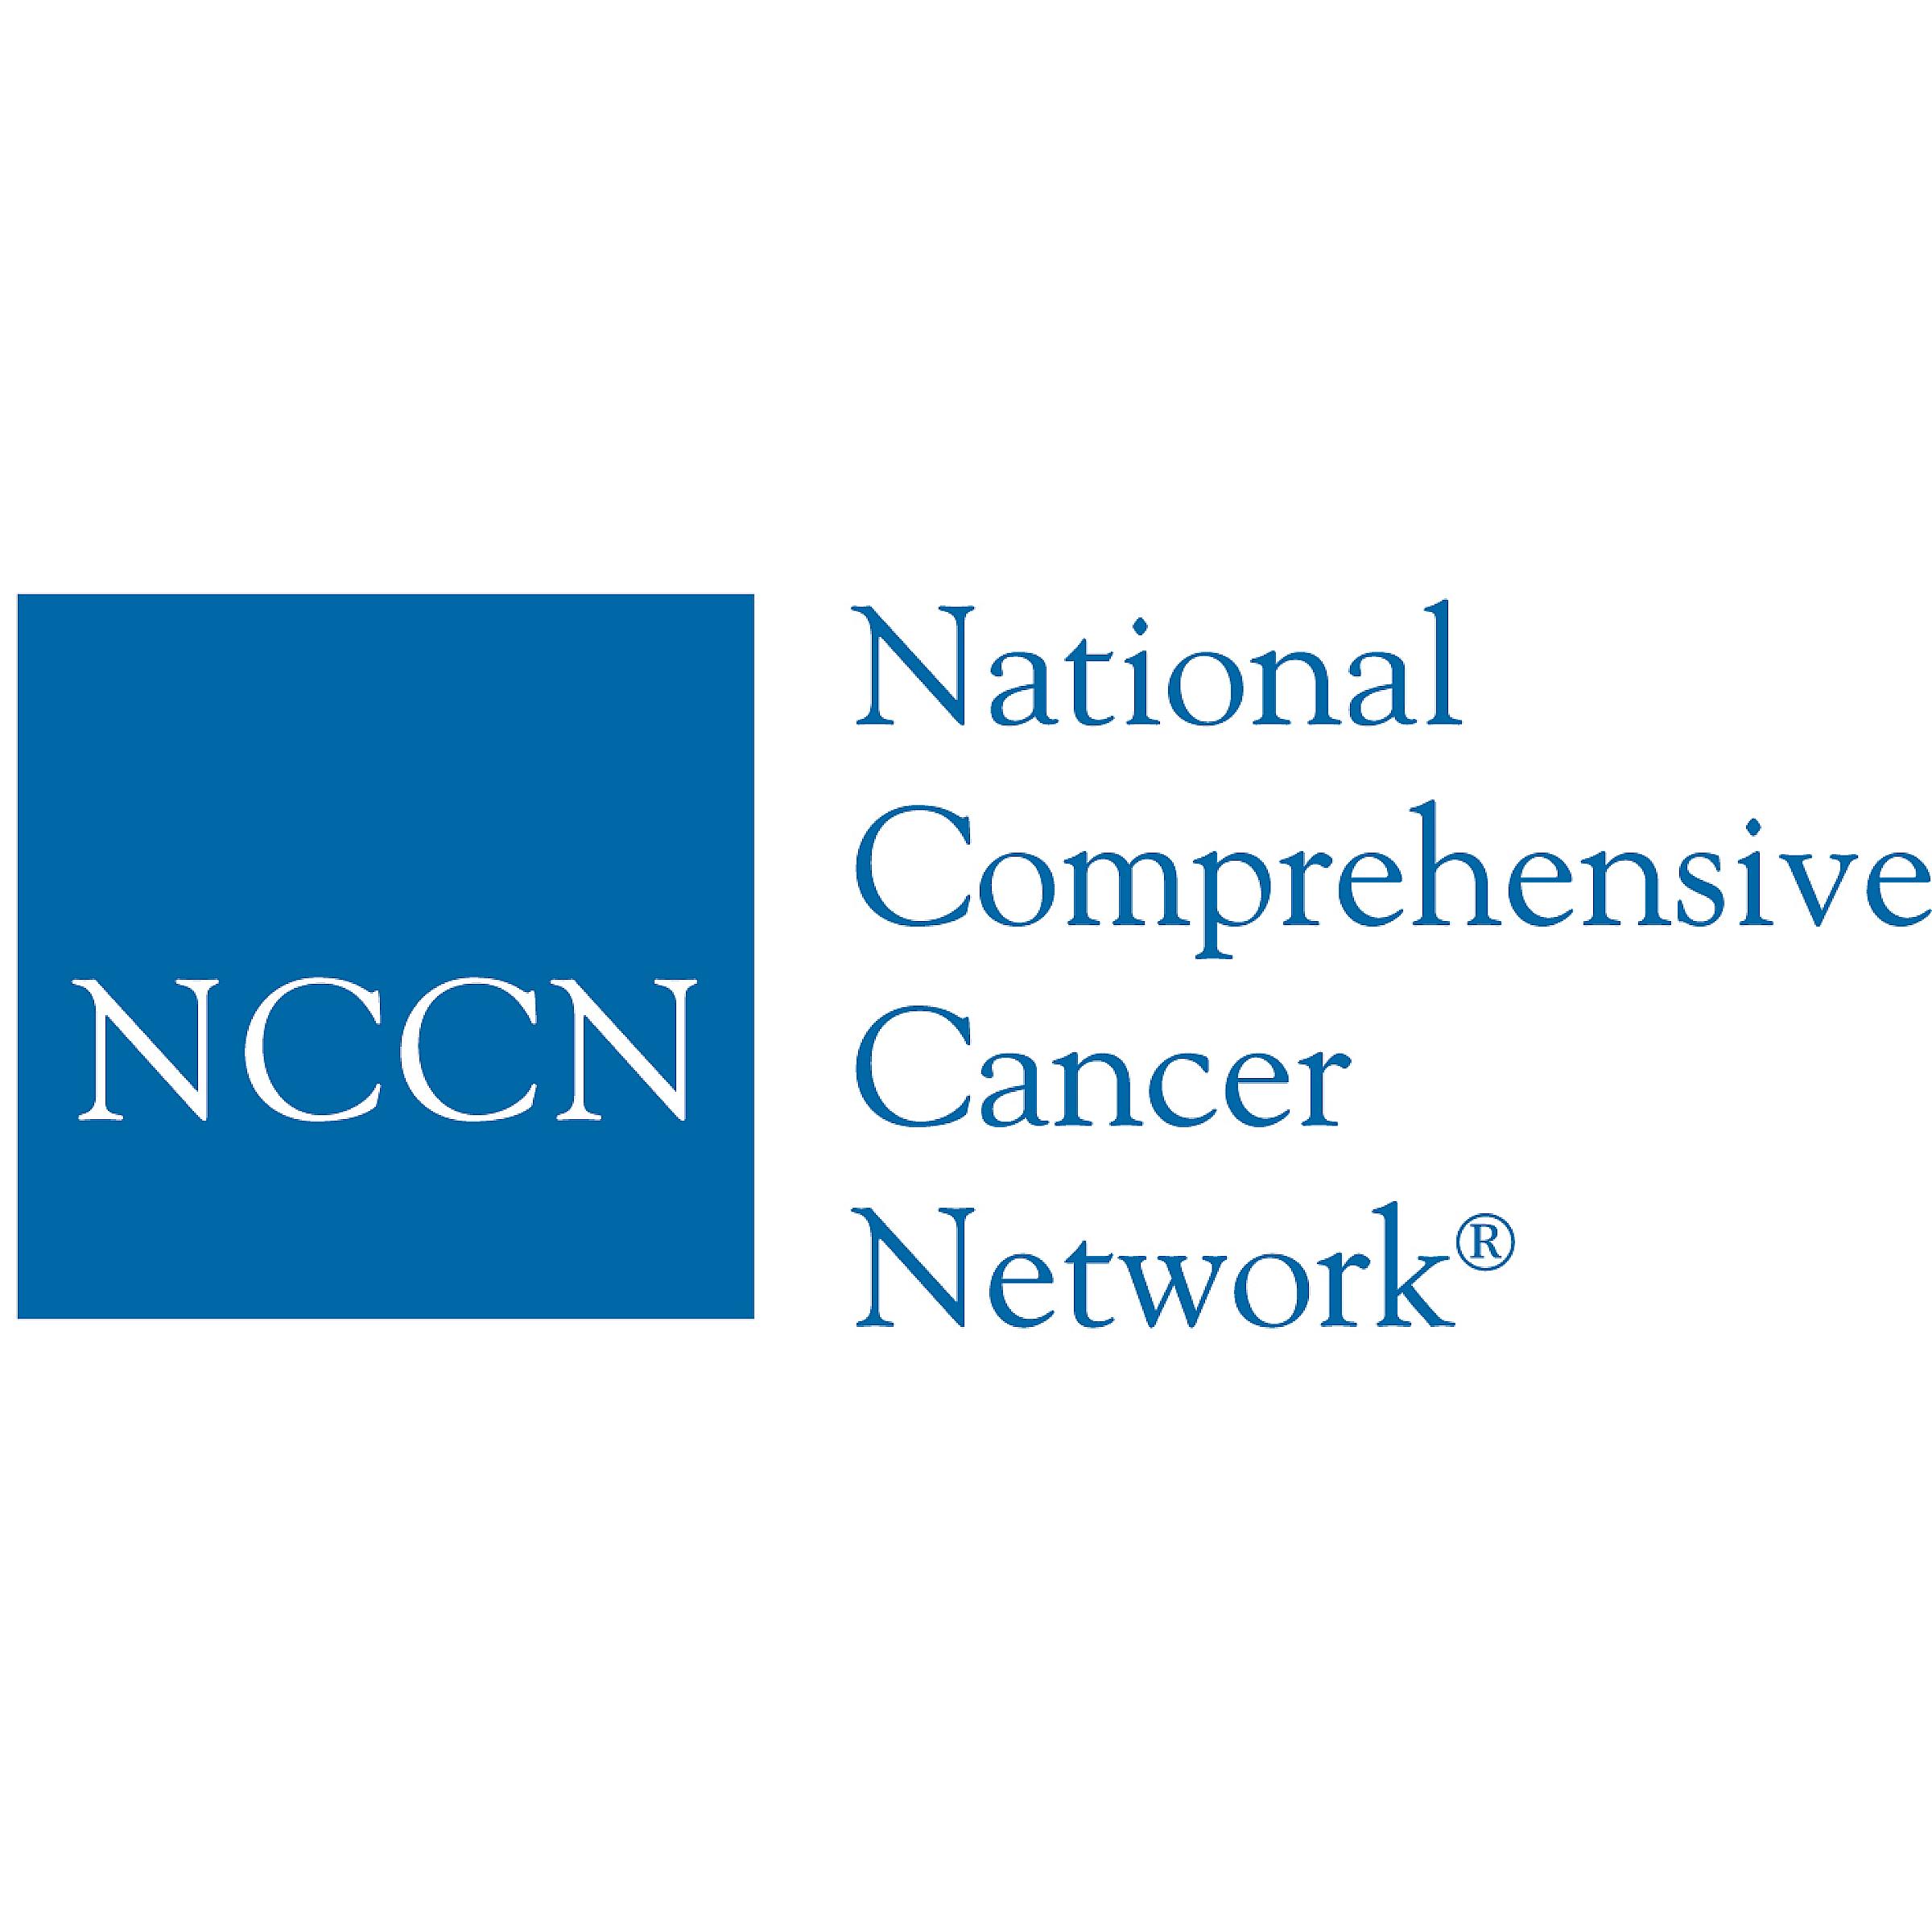 National Comprehensive Cancer Network logo